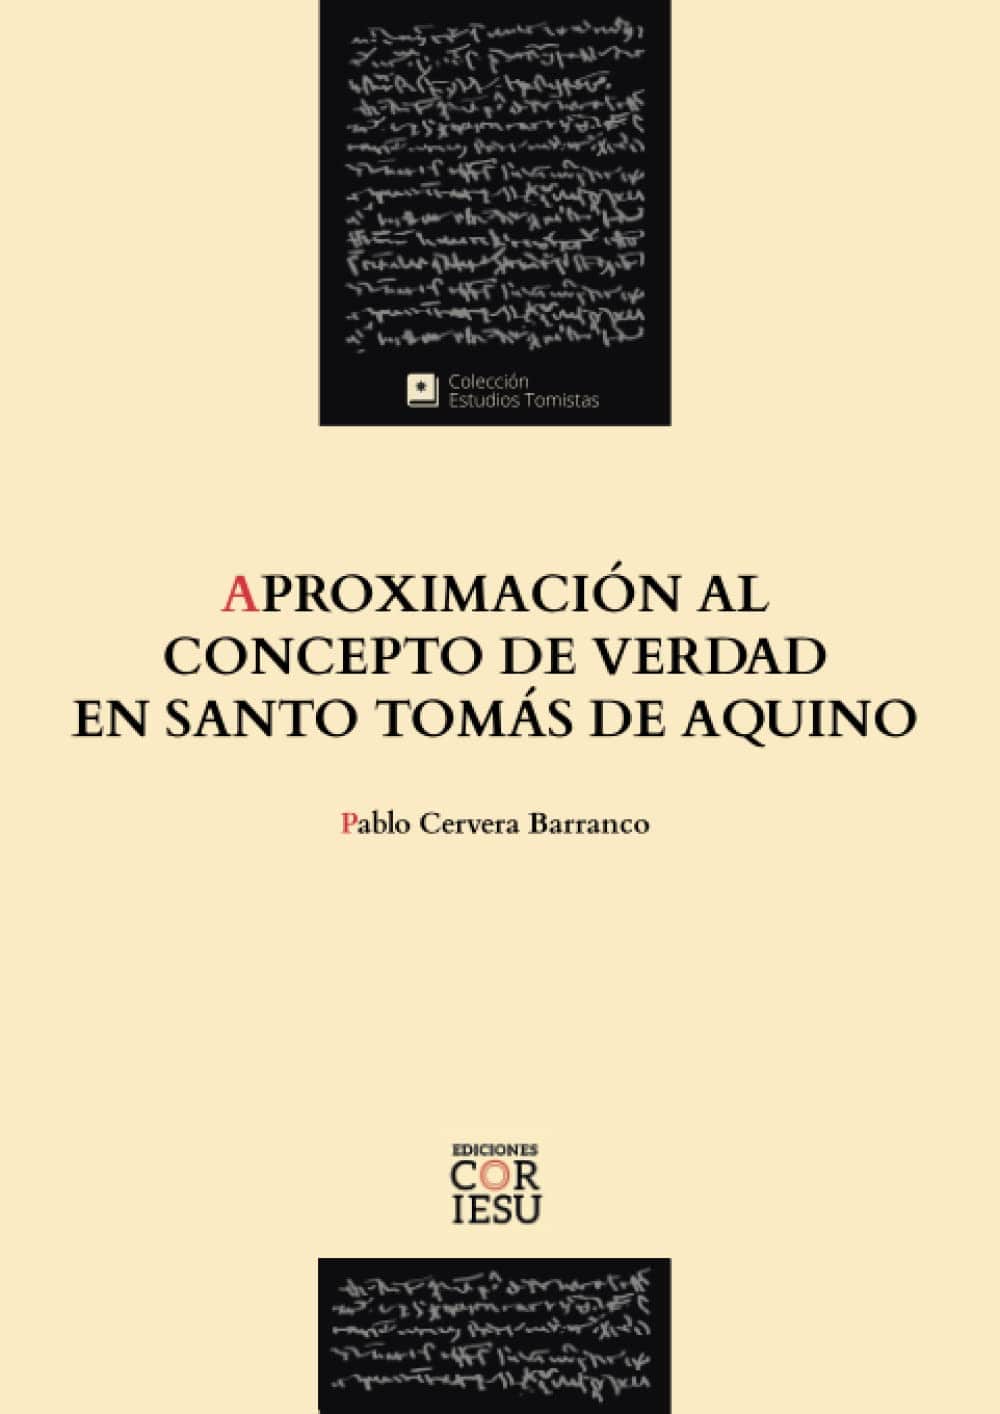 Aproximación al concepto de Verdad en Santo Tomás de Aquino, por Pablo Cervera Barranco